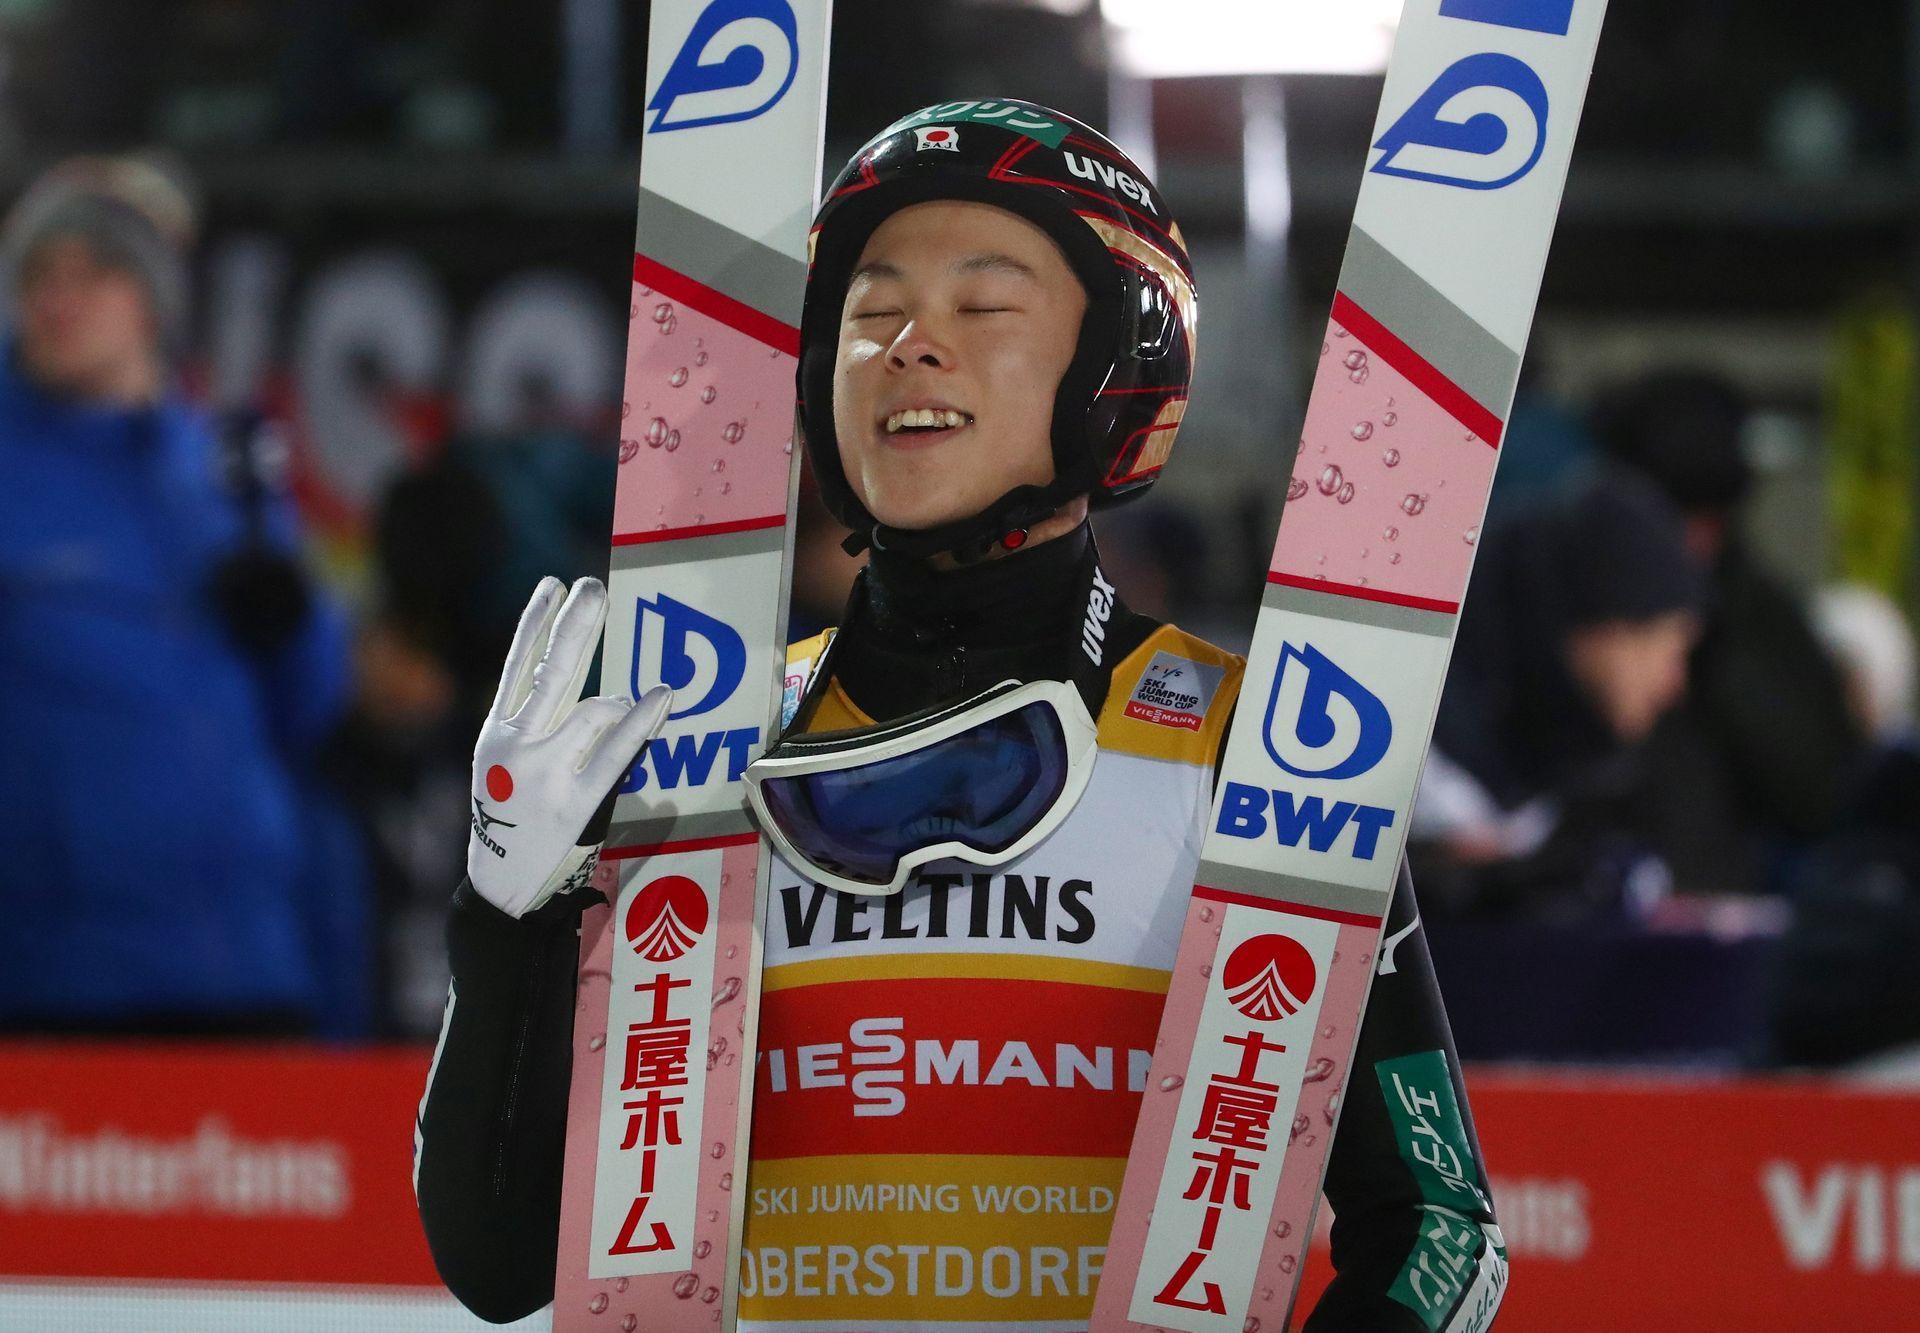 skoky na lyžích, Turné čtyř můstků 2018/2019, vítěz z Oberstdorfu Rjoju Kobajaši